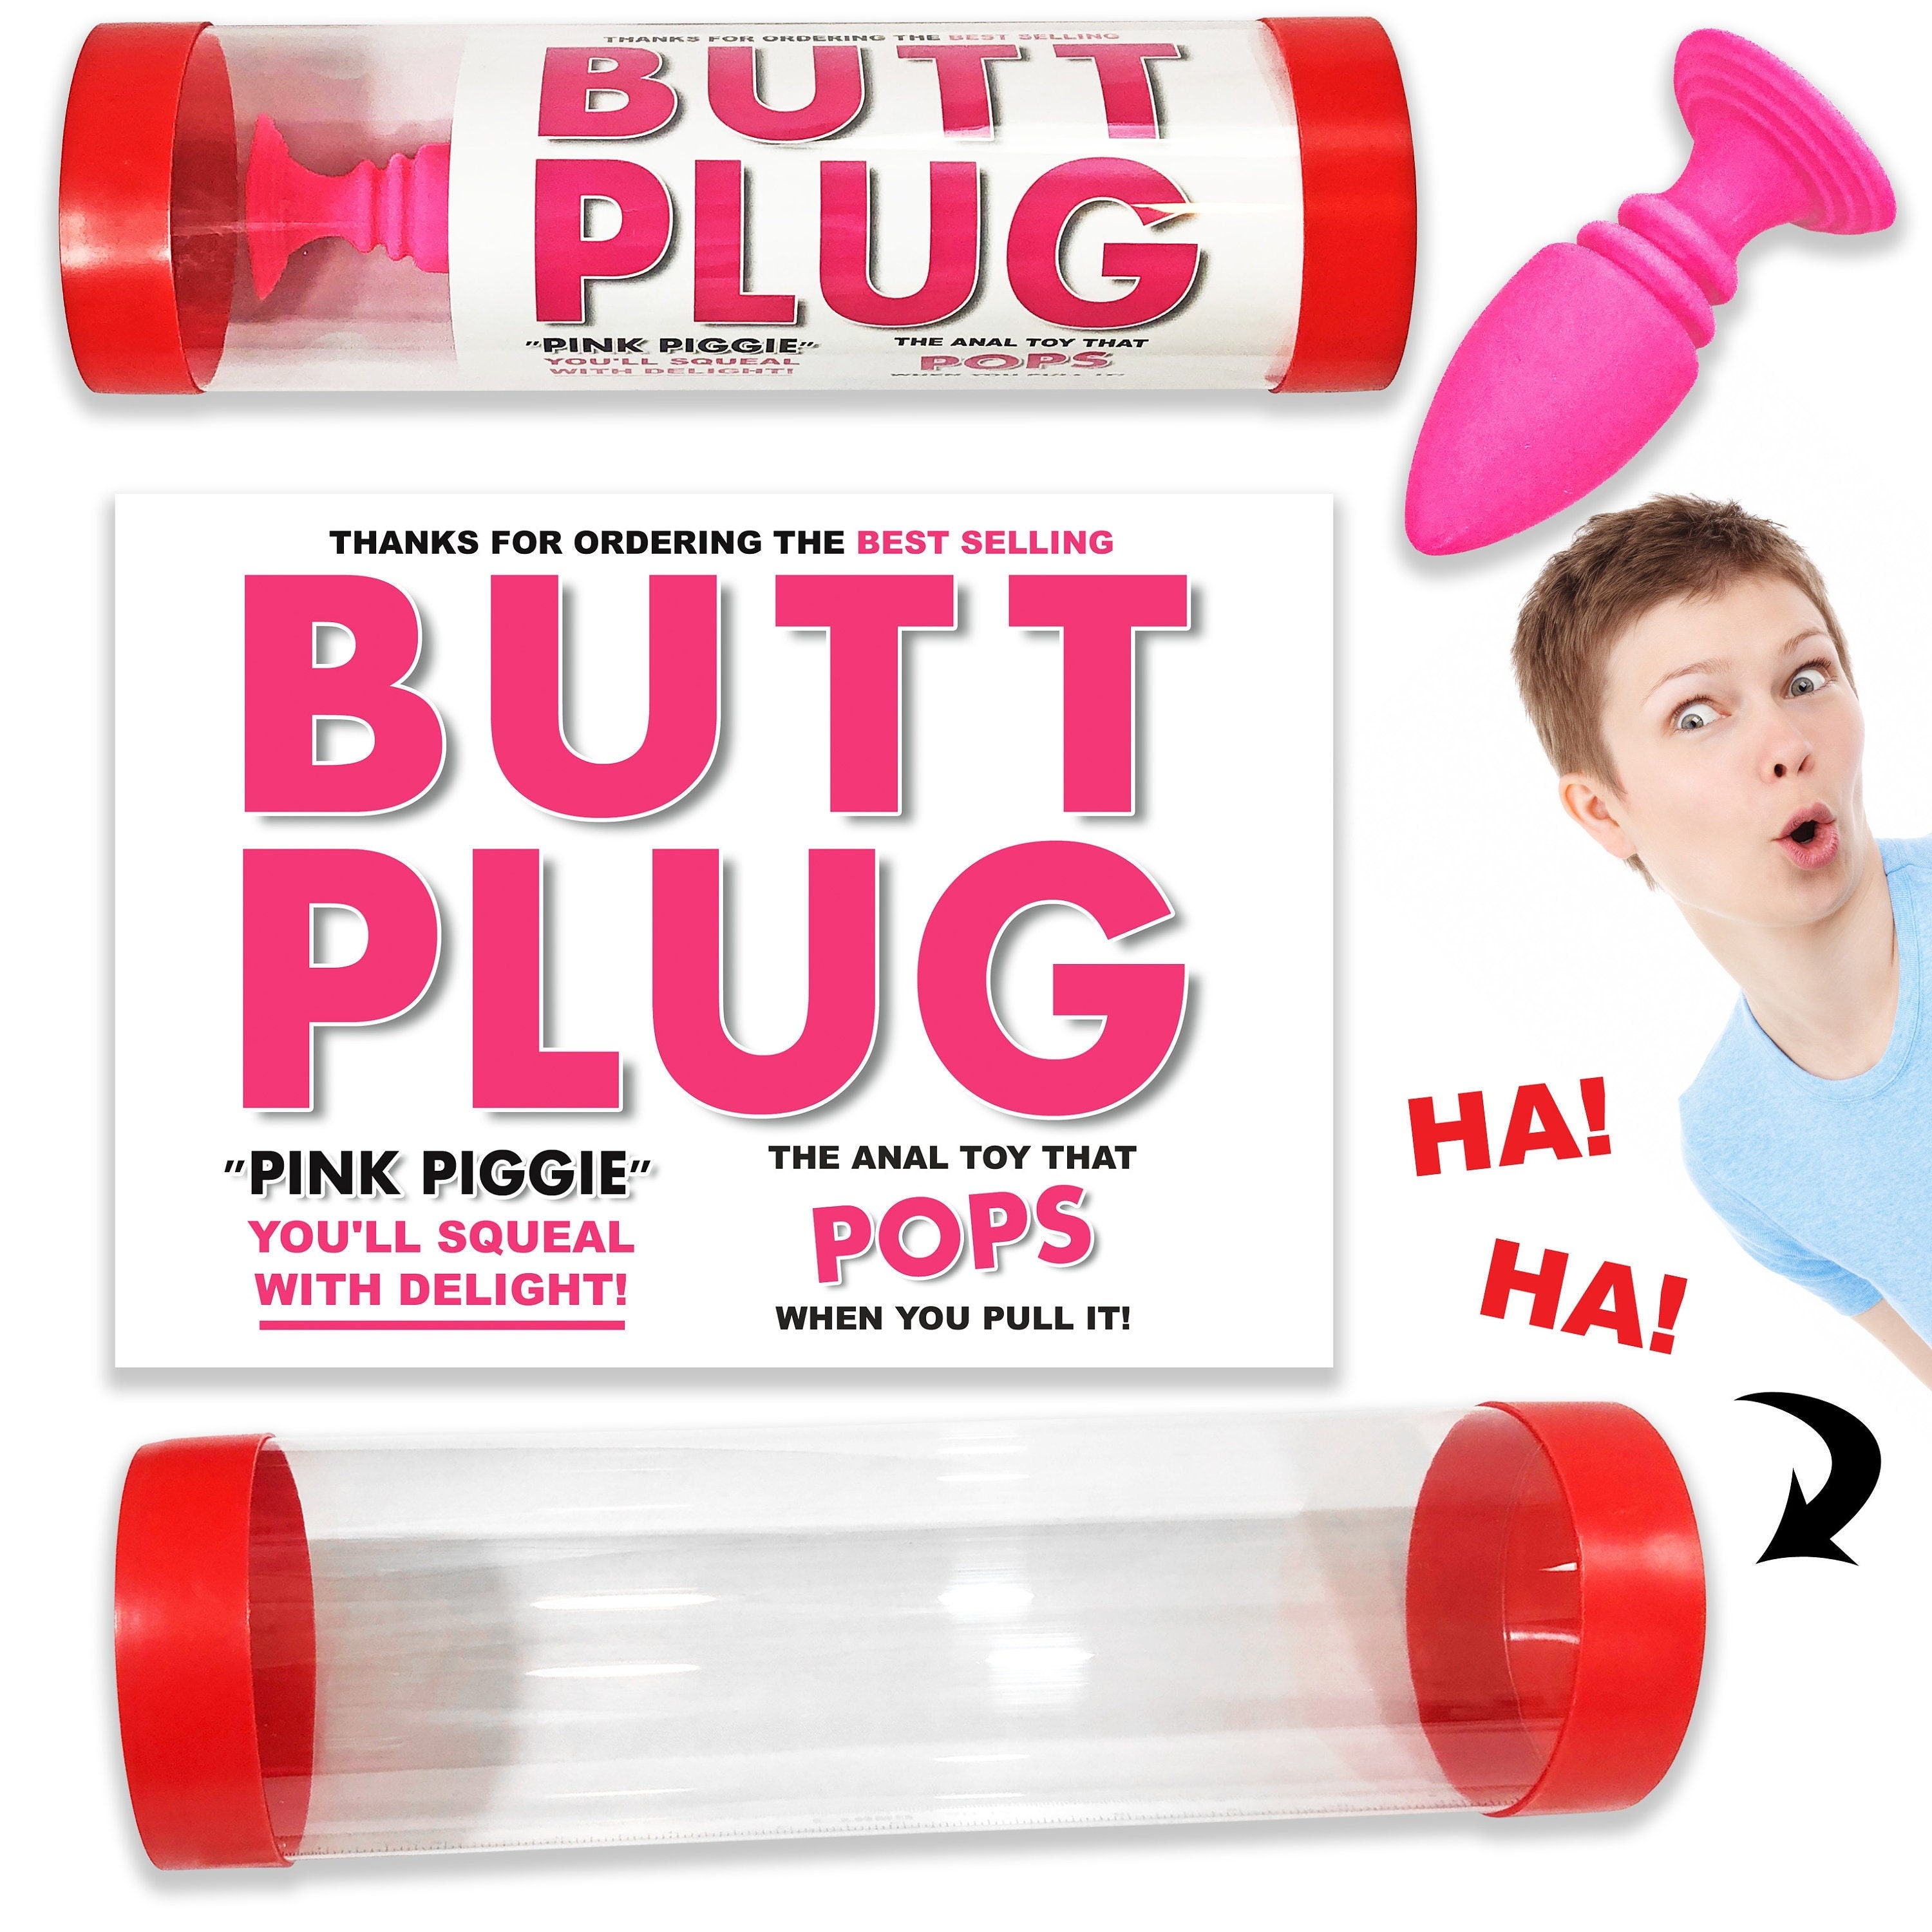 Butt Plug Fun